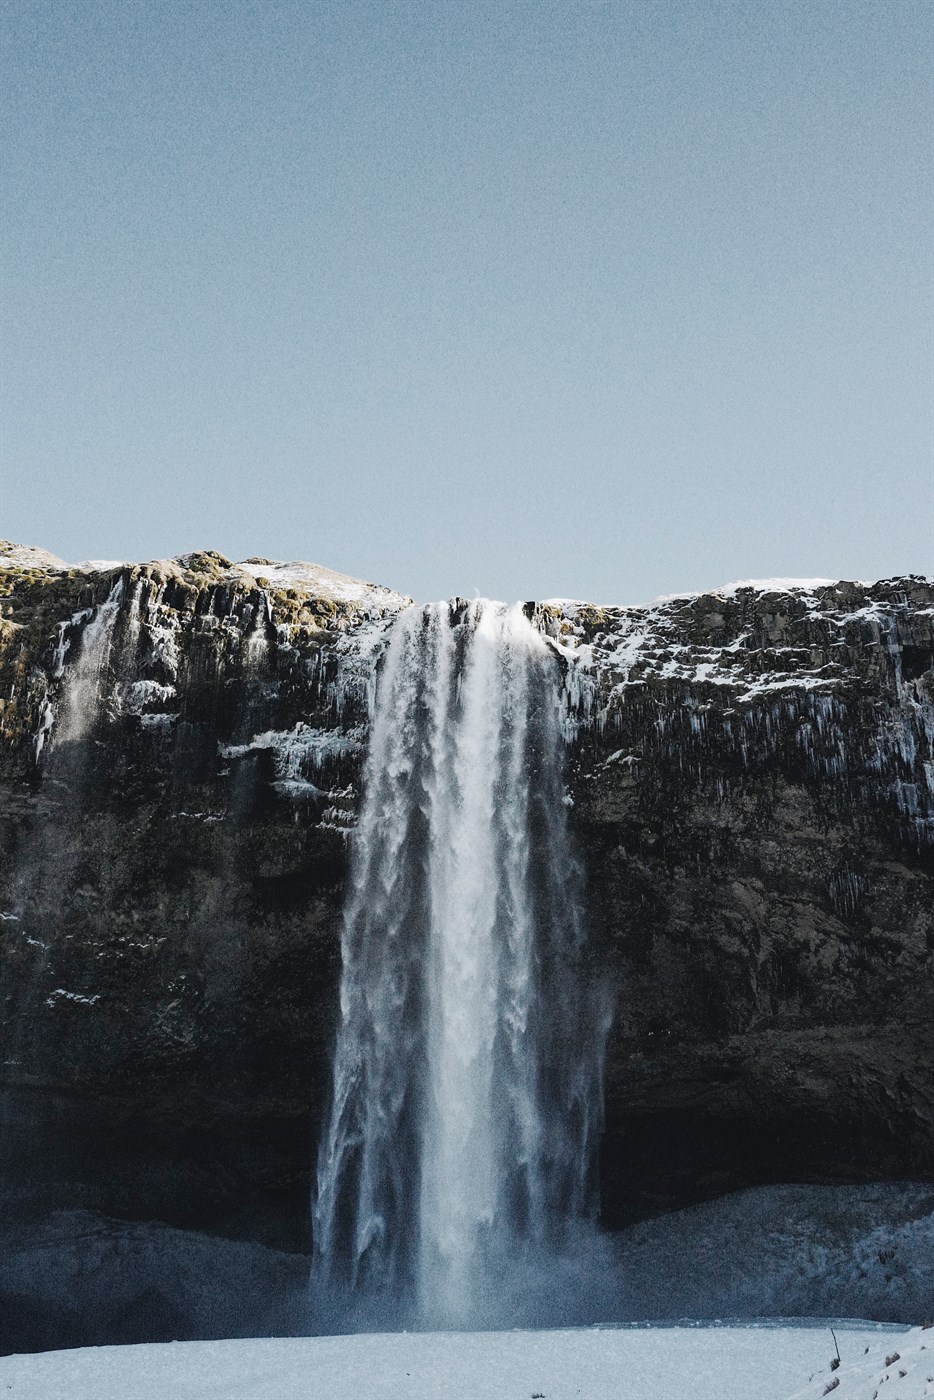 Skogafoss Waterfall in Iceland